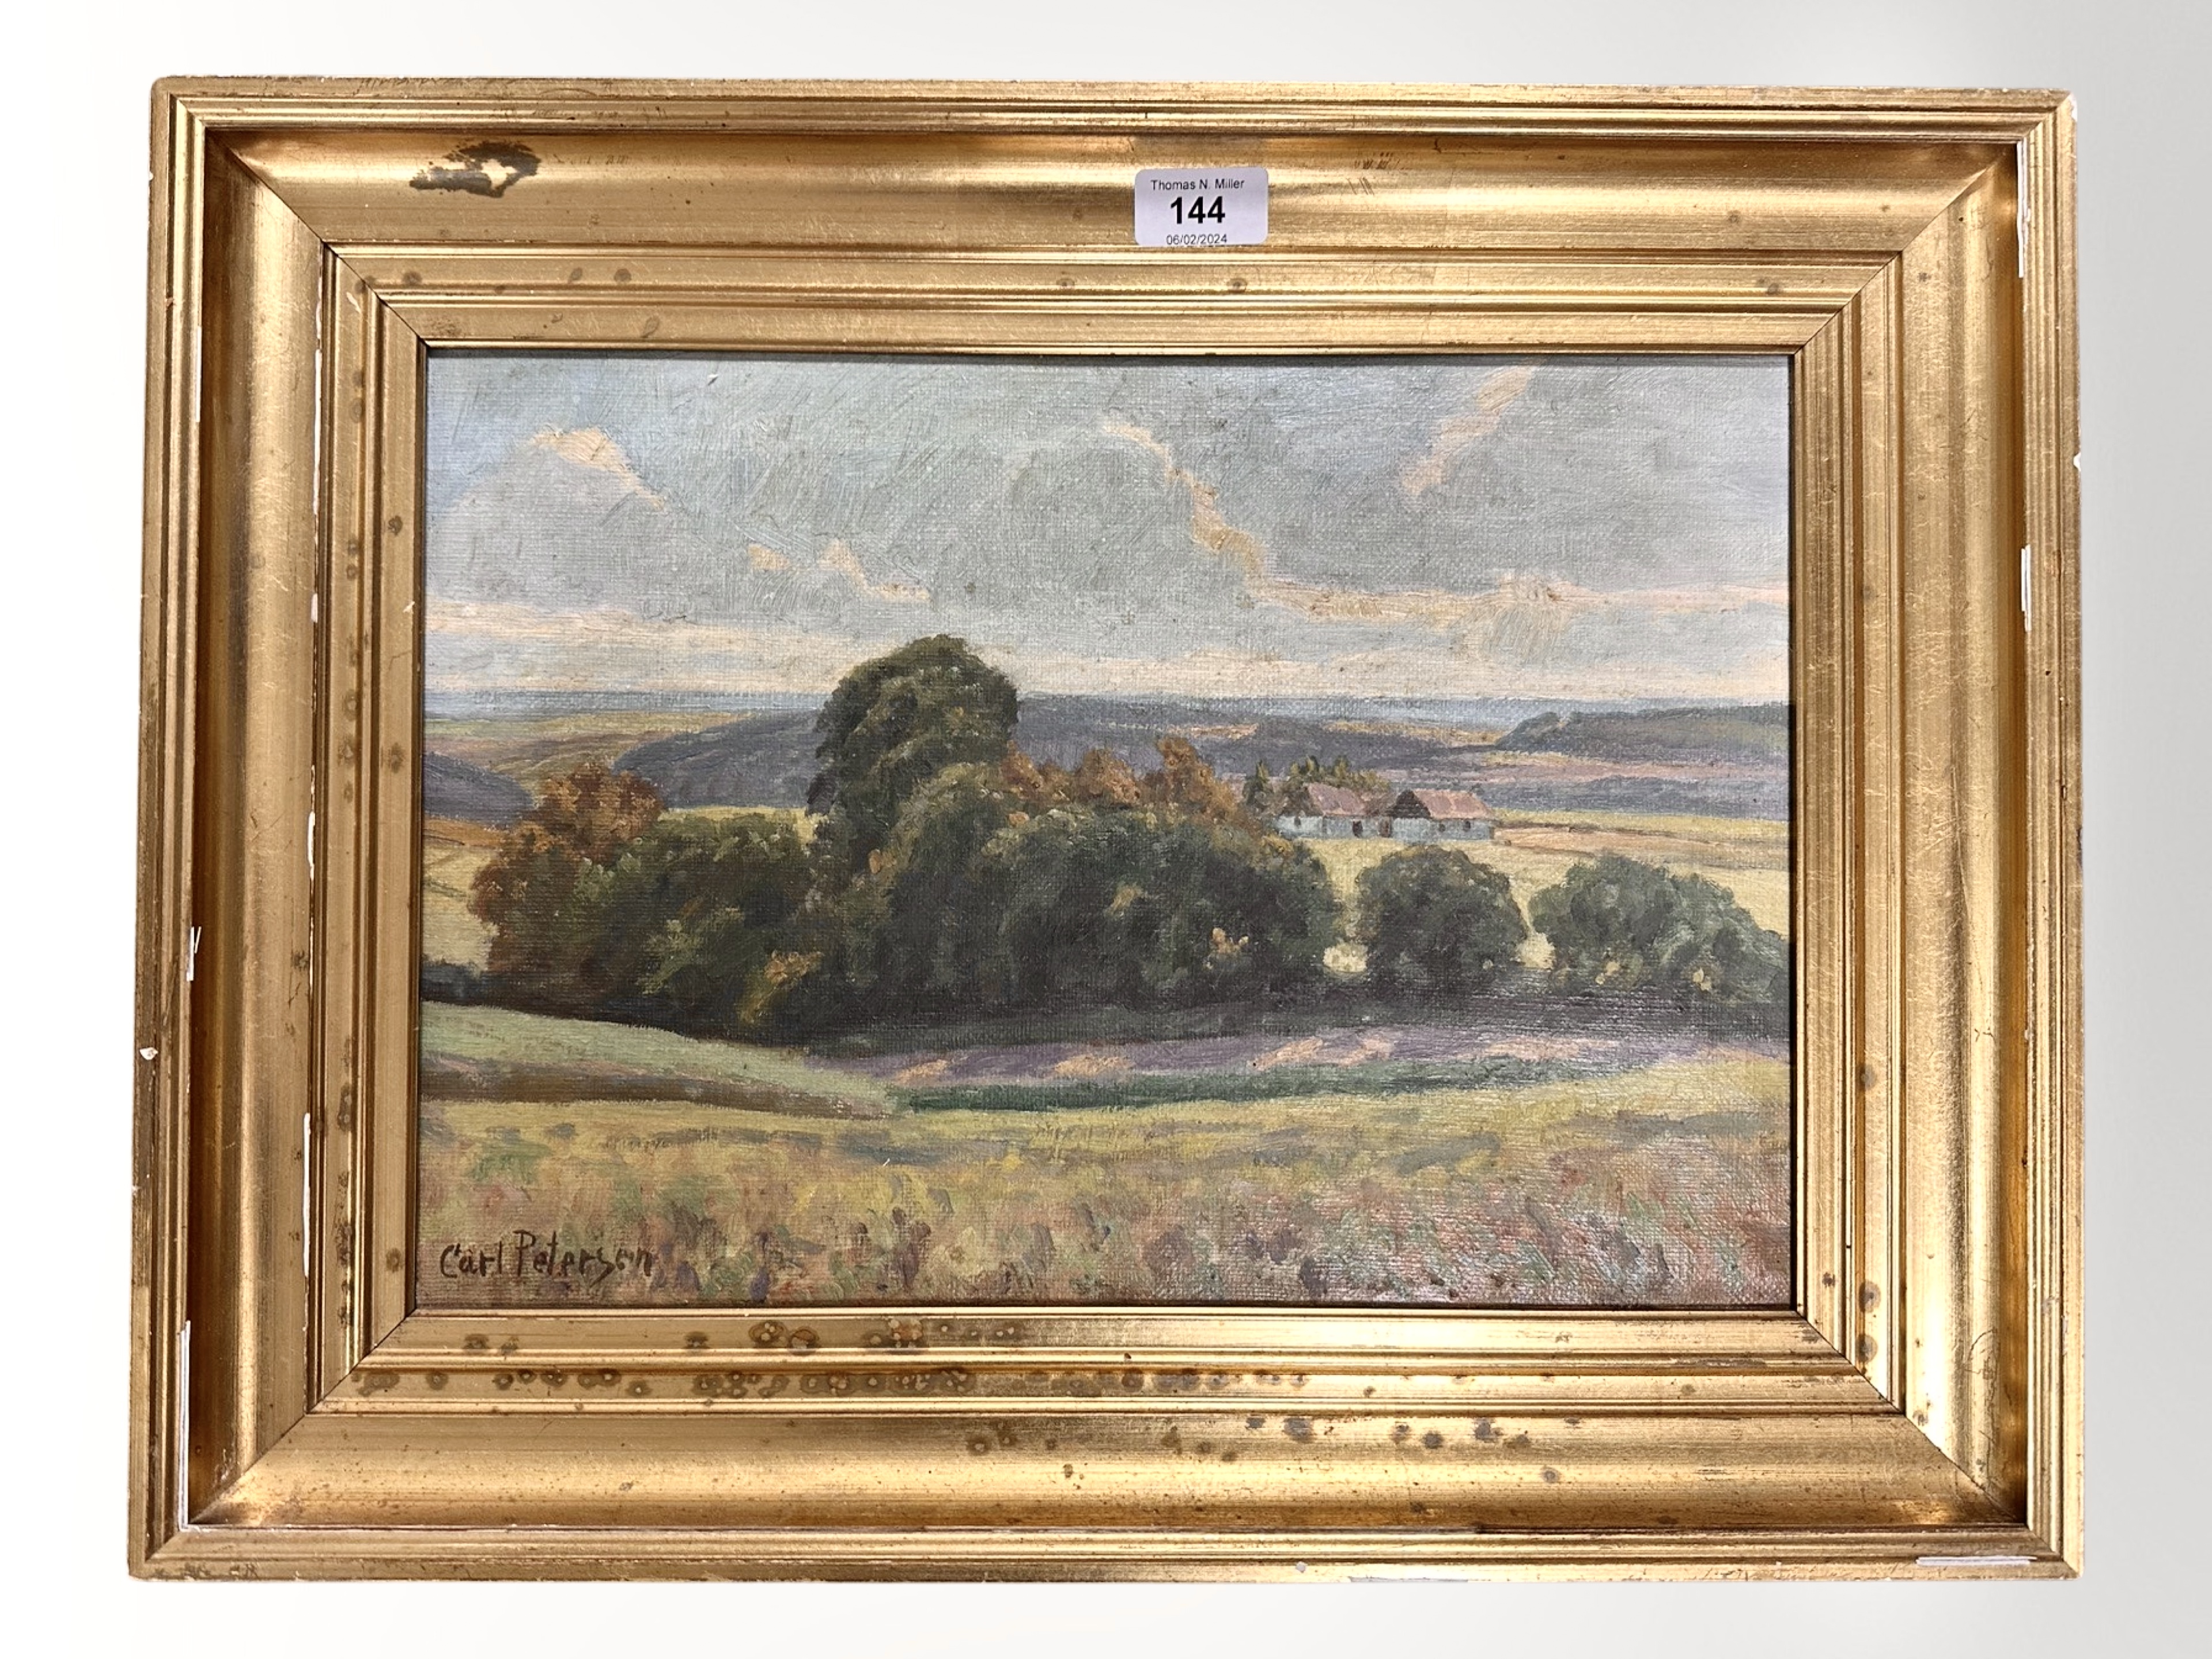 Carl Petersen : Rural landscape, oil on canvas, in gilt frame.